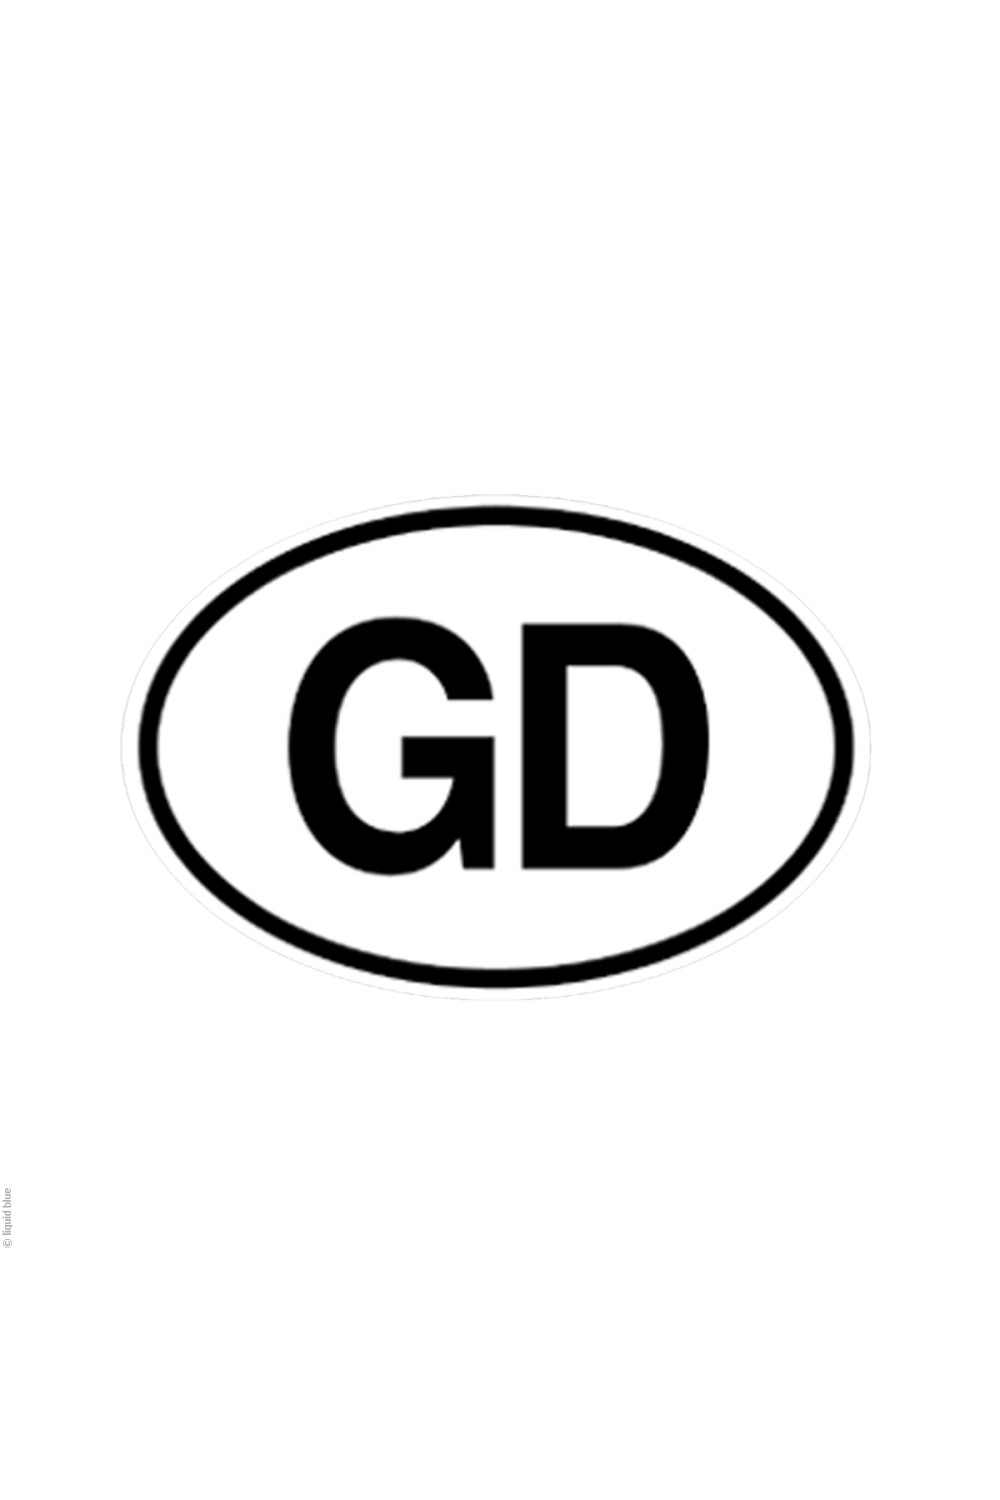 Grateful Dead "GD" Sticker